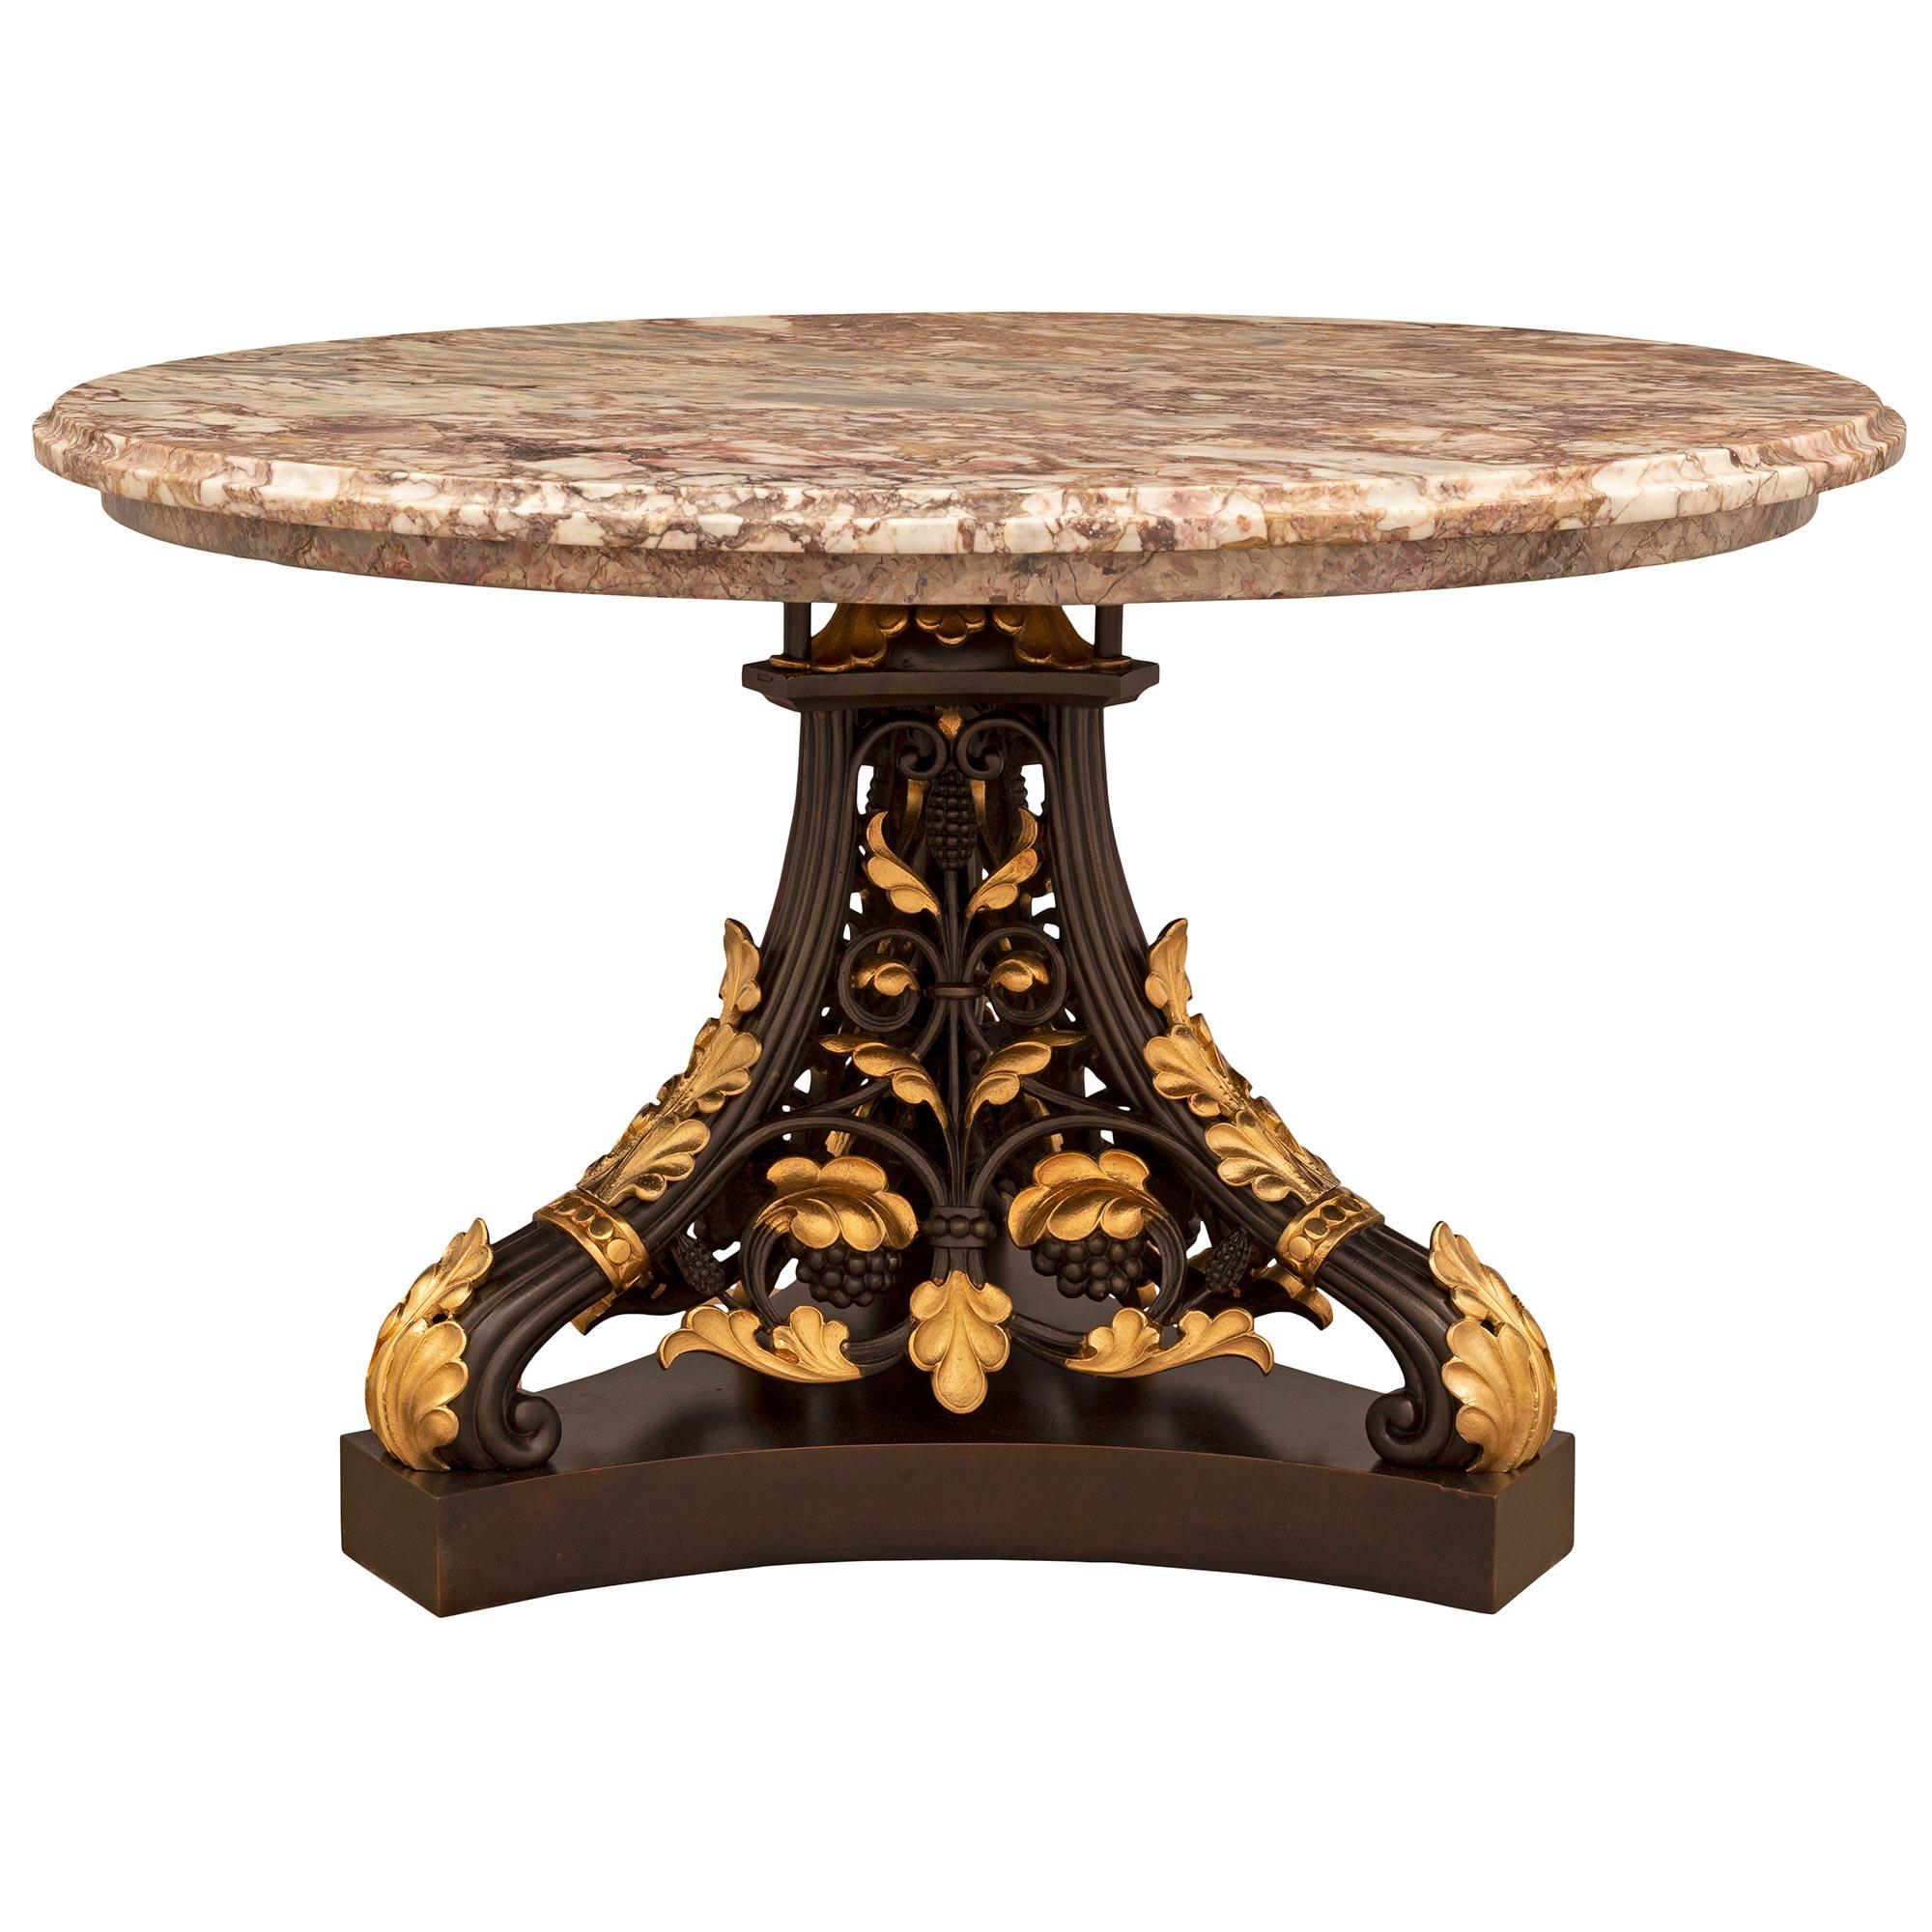 Ein hervorragender und äußerst dekorativer französischer neoklassizistischer Cocktail-/Kaffeetisch aus dem 19. Jahrhundert aus patinierter Bronze, Ormolu, künstlich bemaltem Marmor und Sarrancolin-Marmor. Der runde Tisch steht auf einem